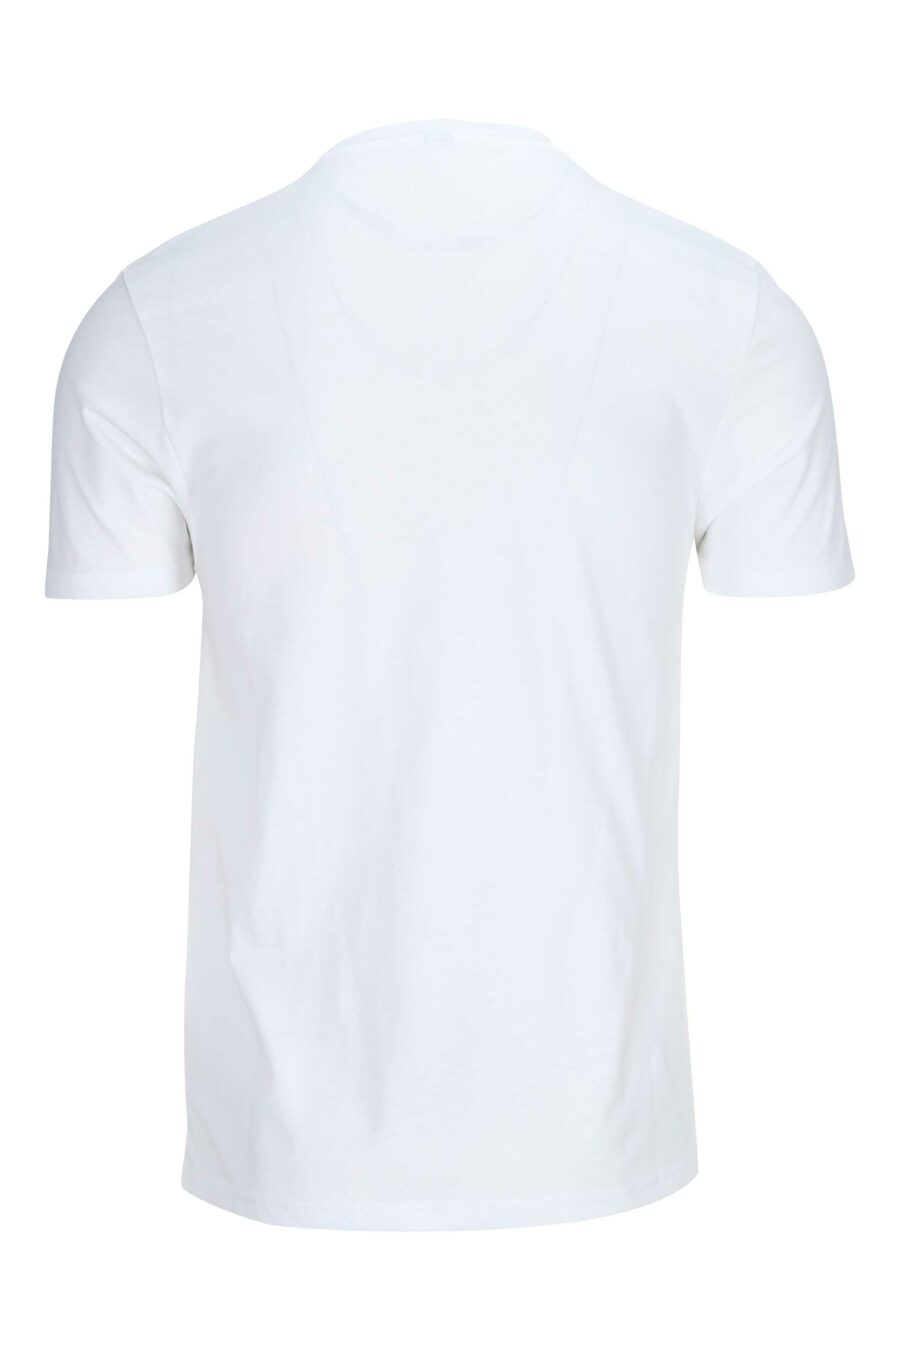 T-shirt blanc avec logo en ruban sur les épaules - 667113024998 1